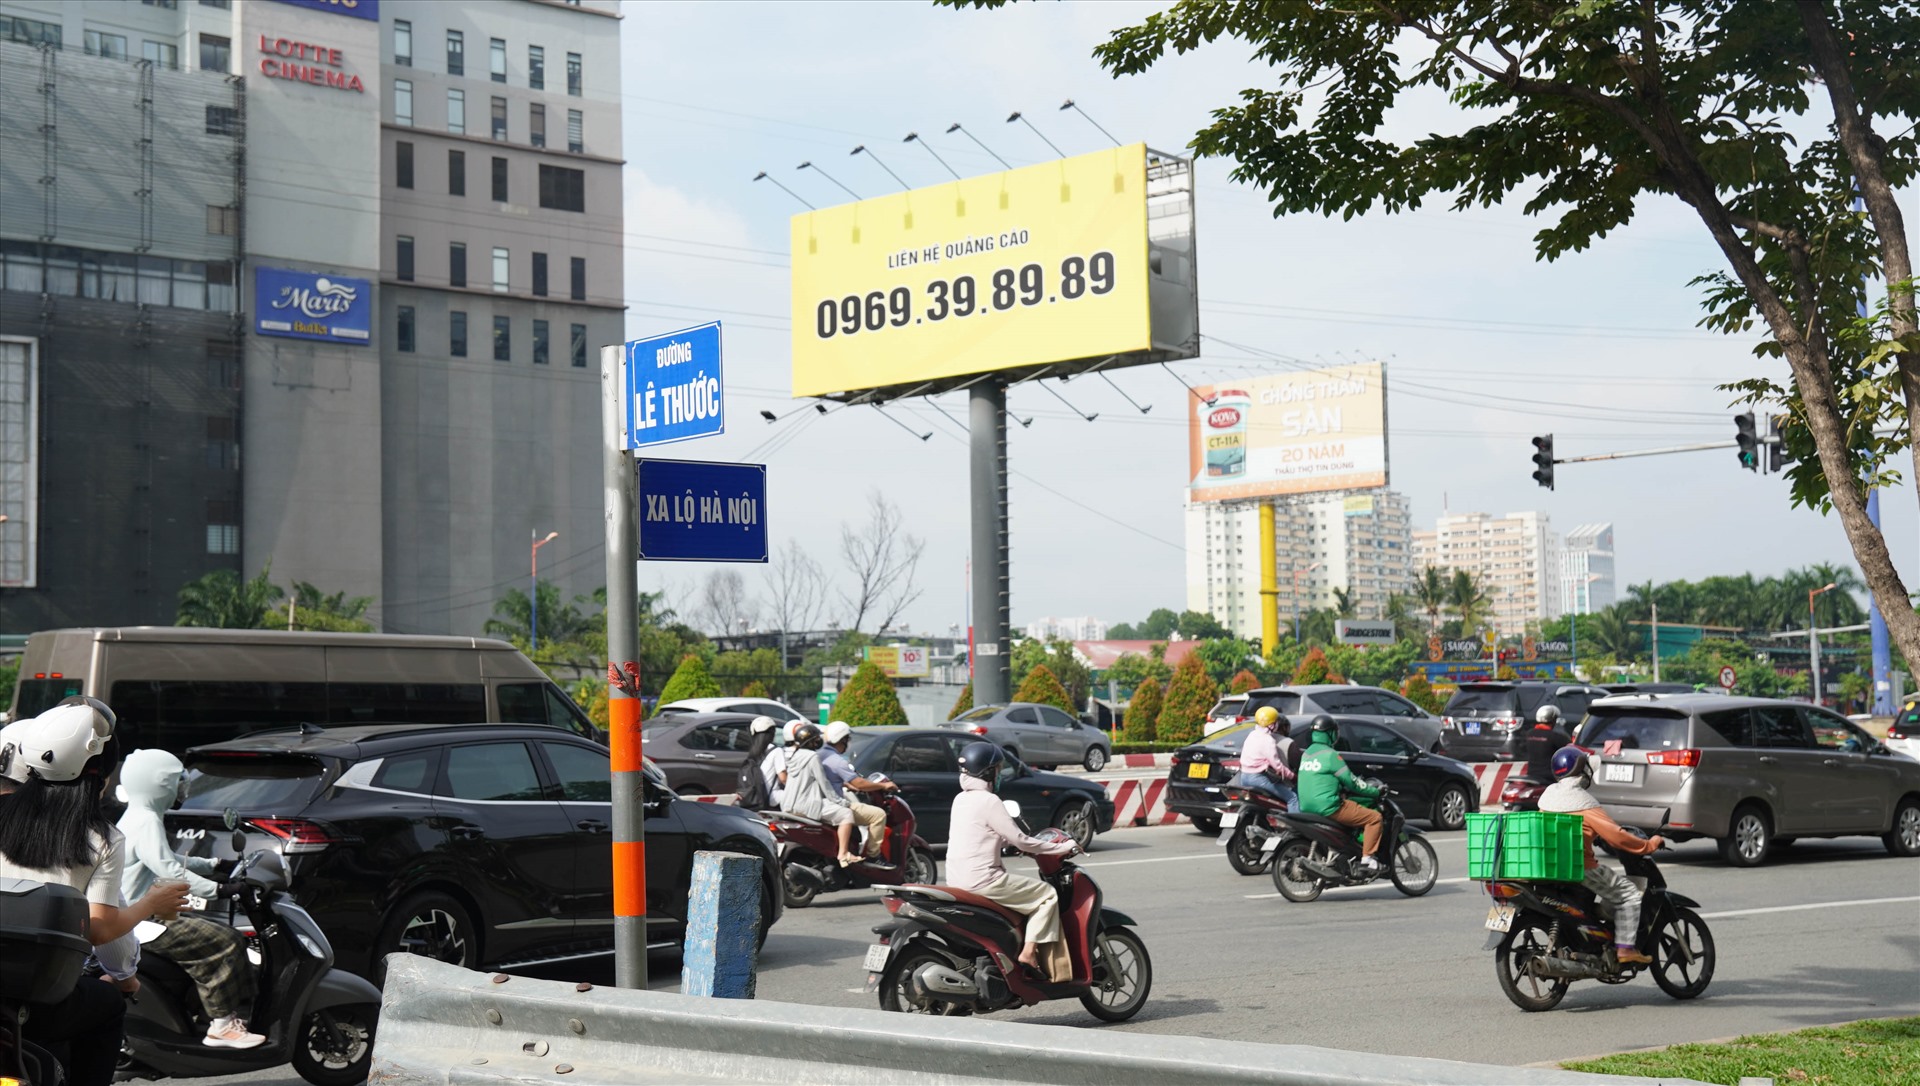 Bảng tên Xa lộ Hà Nội sẽ được đổi thành Võ Nguyên Giáp. Việc chọn tên đường Võ Nguyên Giáp nhằm ghi nhận công lao to lớn của Đại tướng Võ Nguyên Giáp đối với sự nghiệp đấu tranh giải phóng dân tộc, thống nhất đất nước.